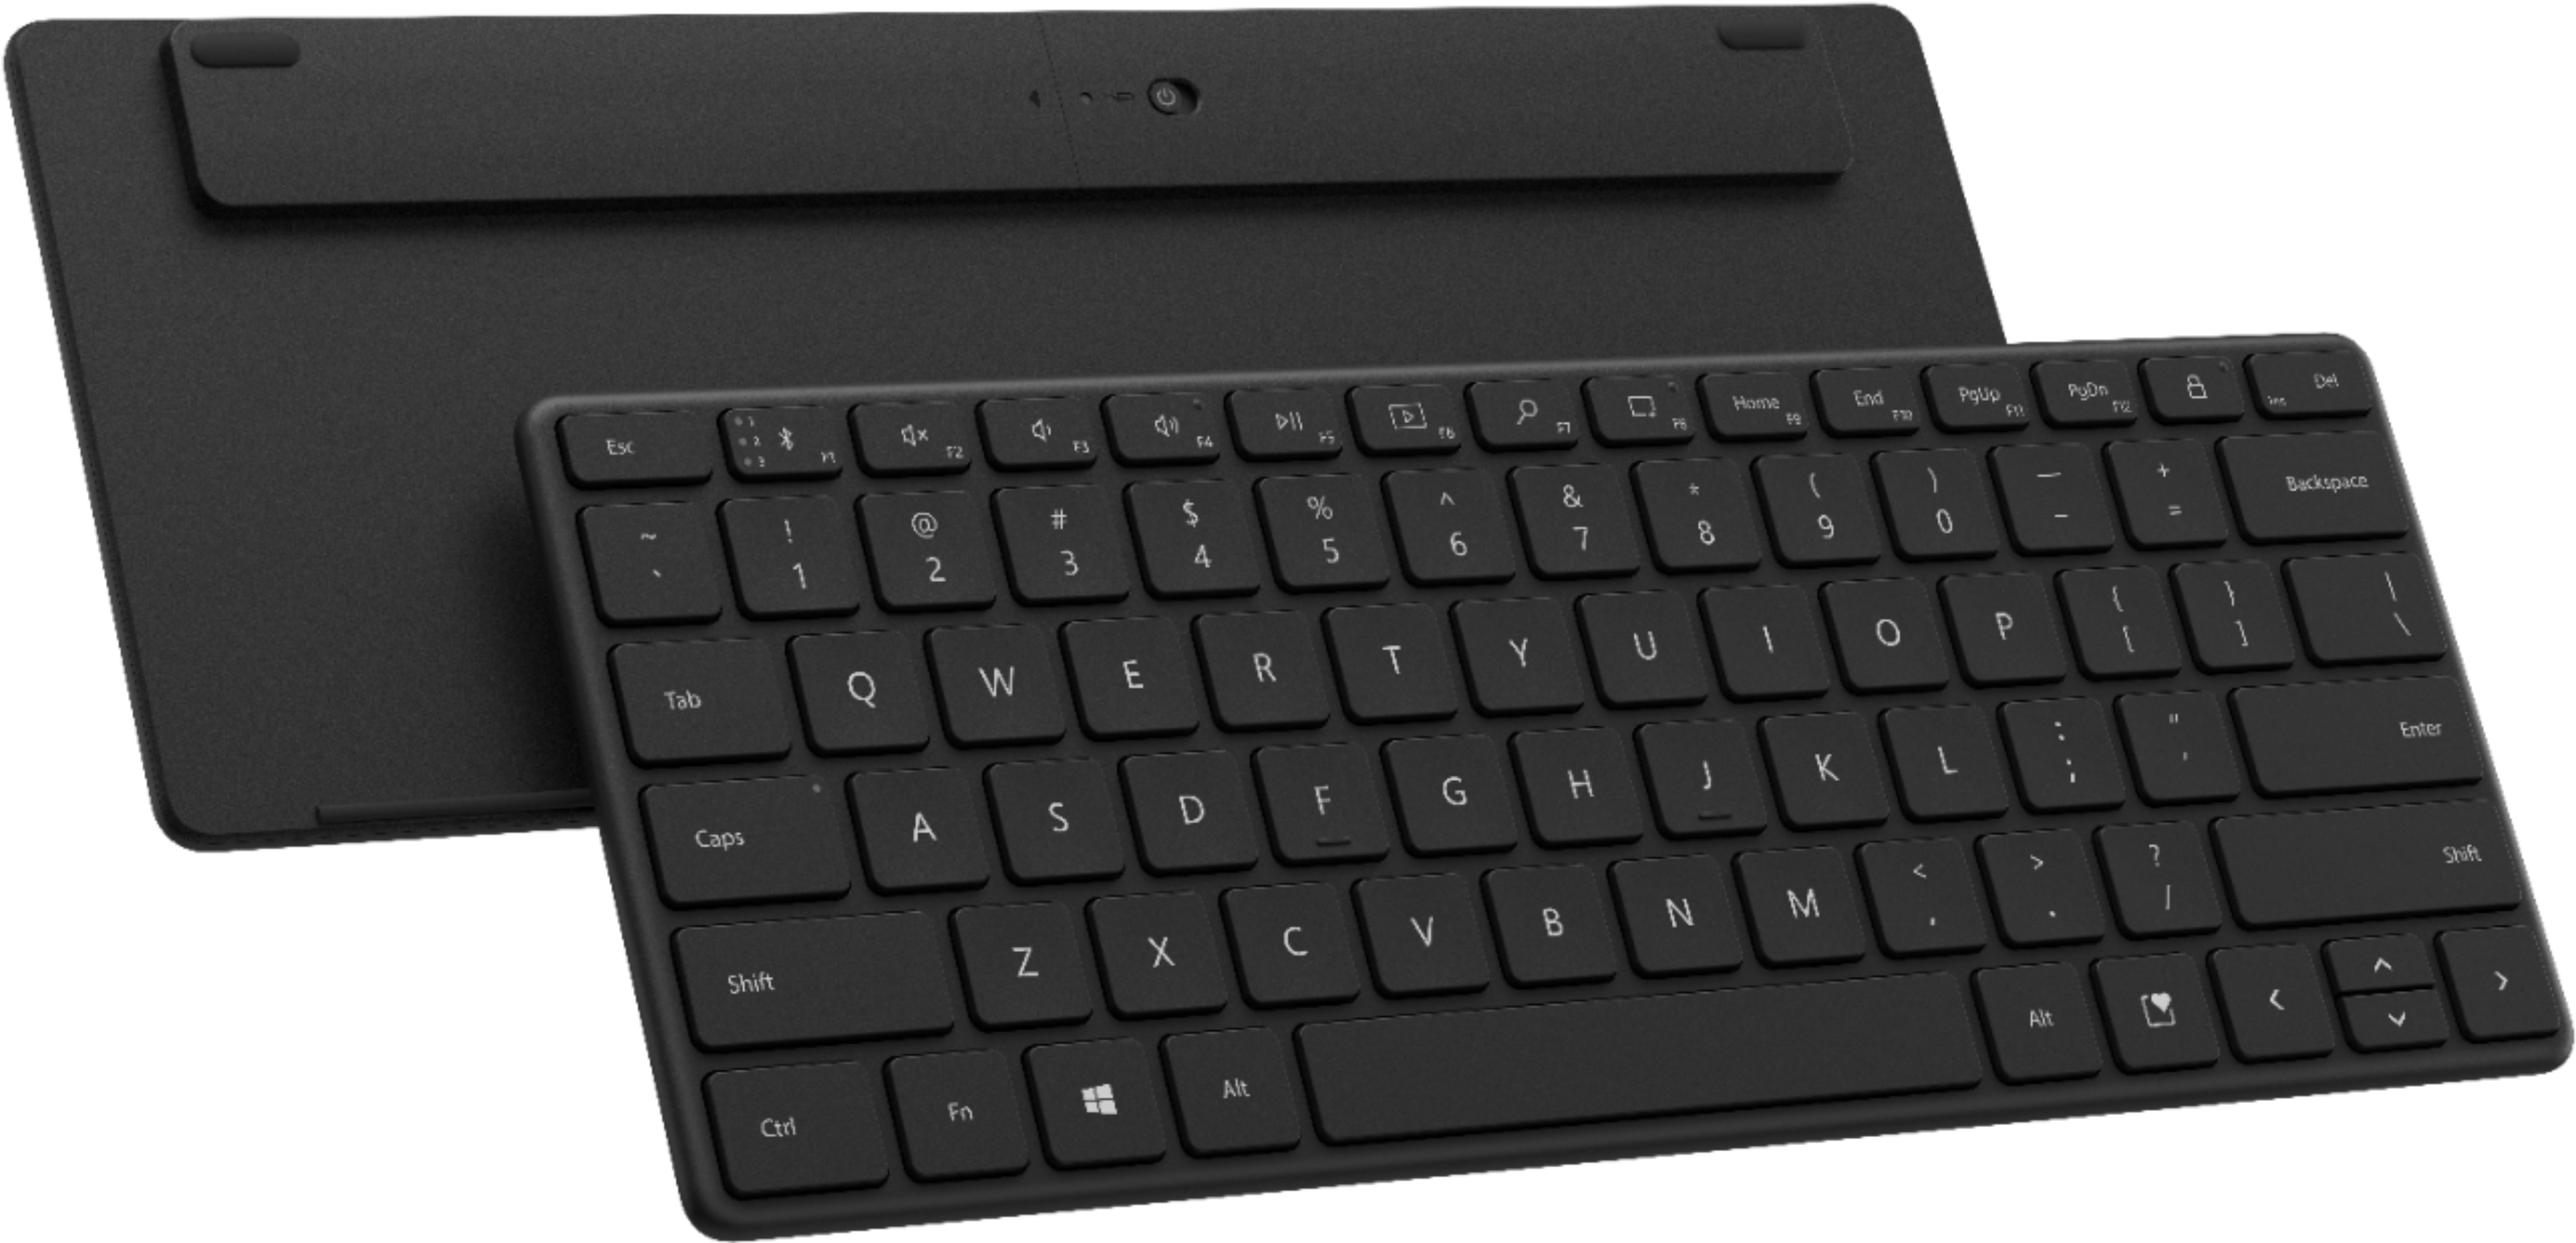 Microsoft Compact Wireless Keyboard Matte 21Y-00001 - Best Buy